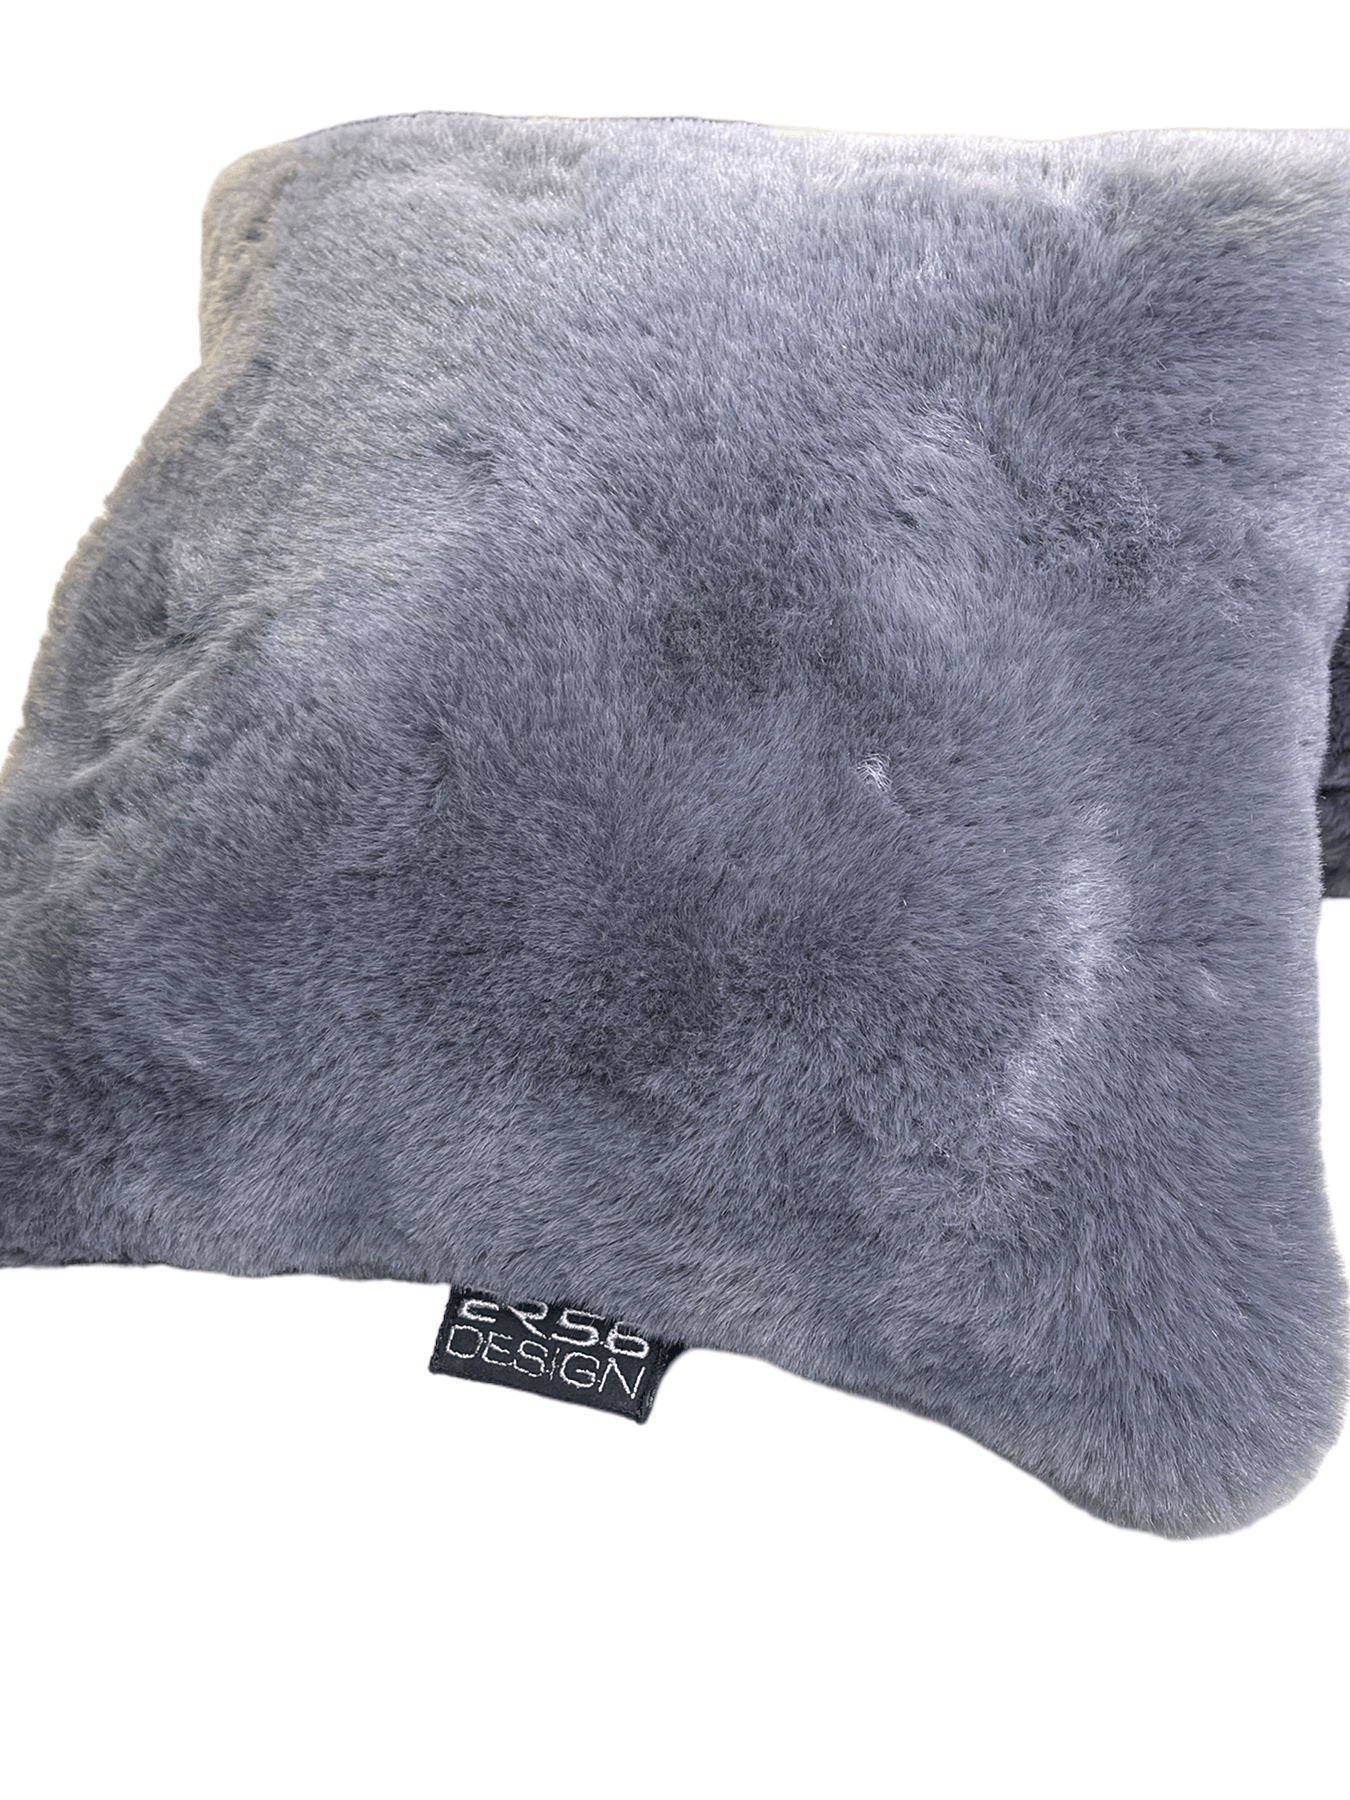 Sheepskin Pillows ER56 Design Set of 2 - AutoWin